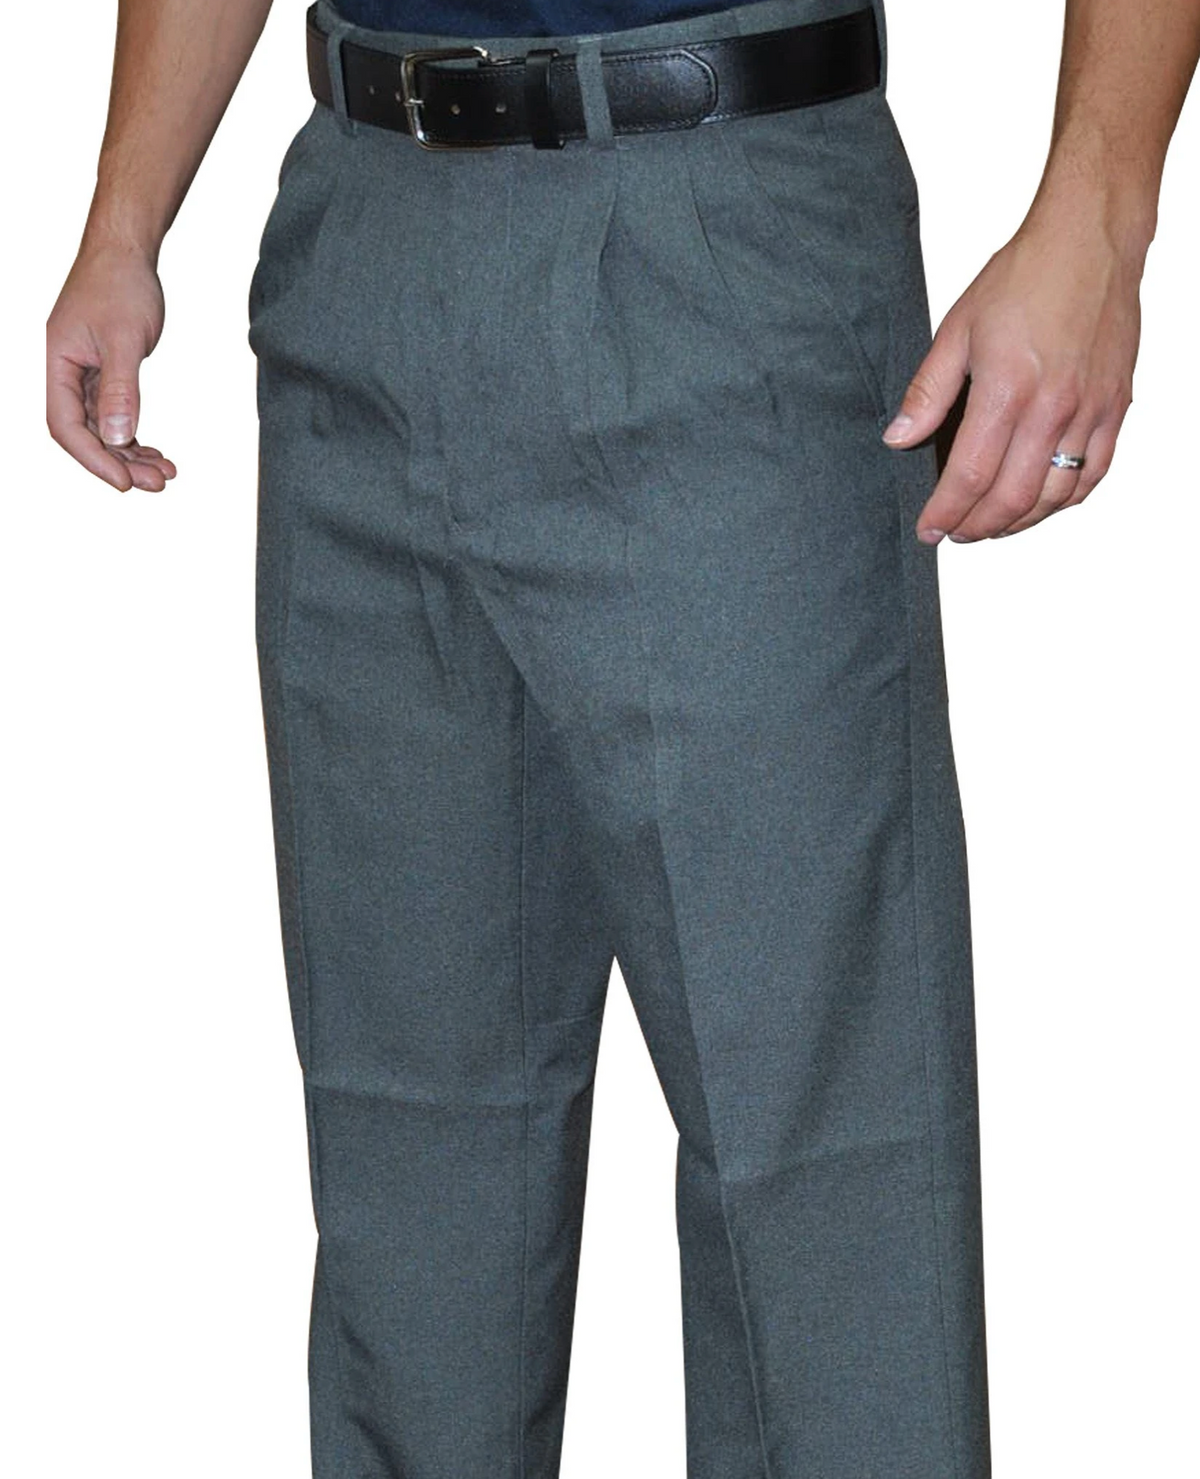 smitty | BBS-374 | Pantalón básico plisado con banda expansora en la cintura | Béisbol Softbol